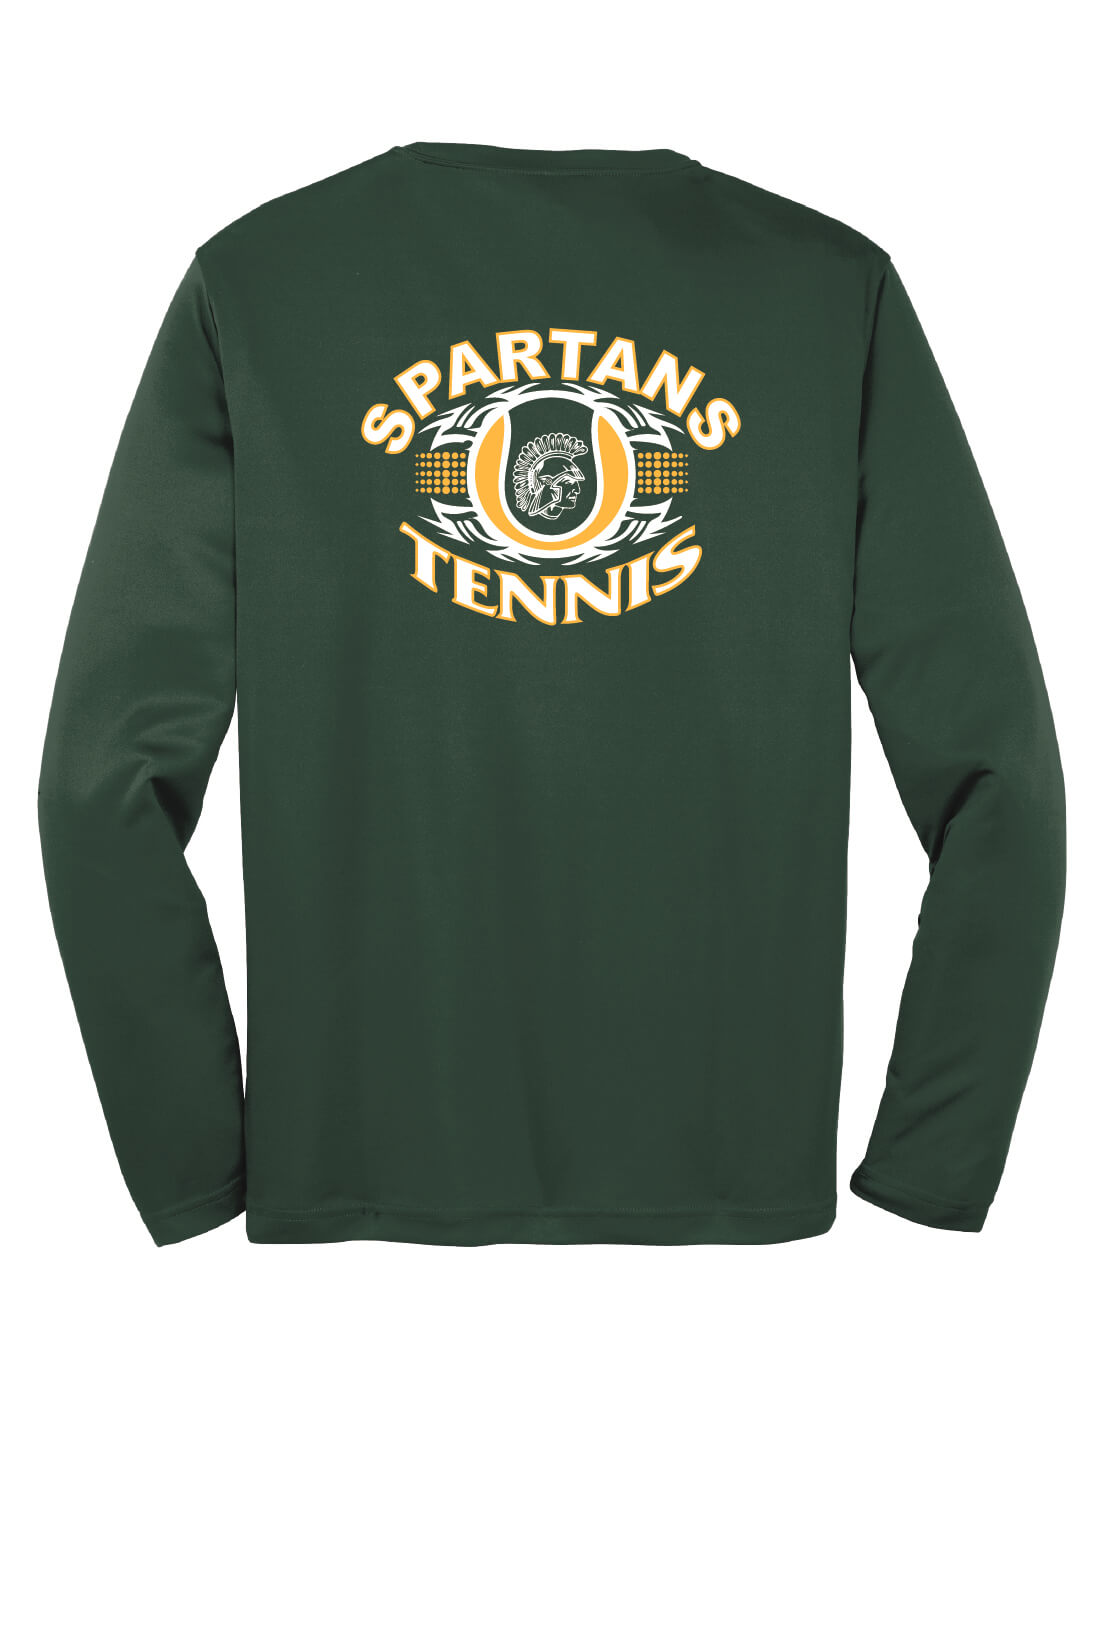 Spartan Tennis Sport Tek Competitor Long Sleeve Shirt back-green